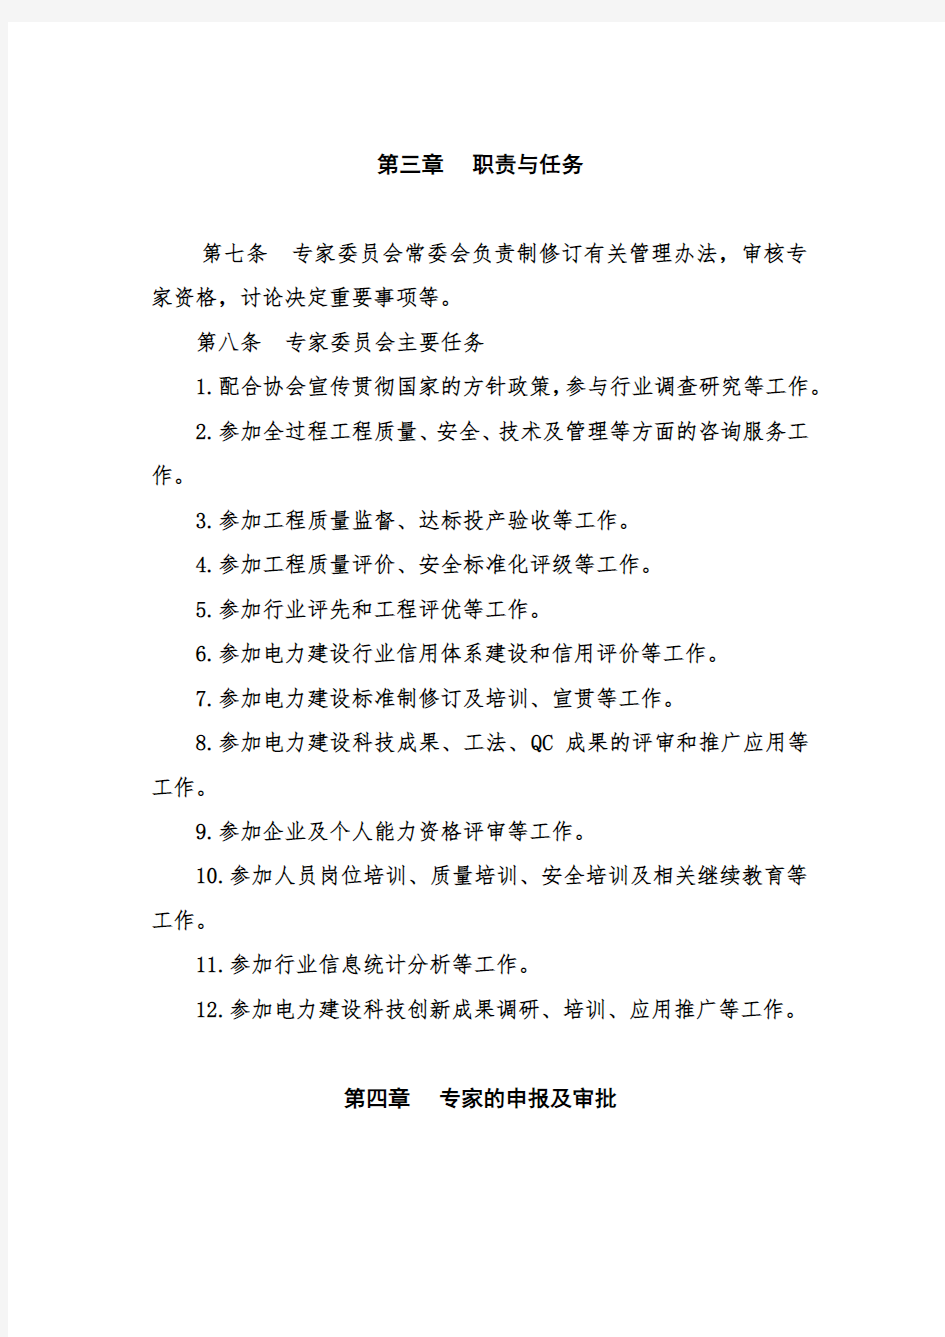 (完整版)中国电力建设专家委员会管理办法(2016版)